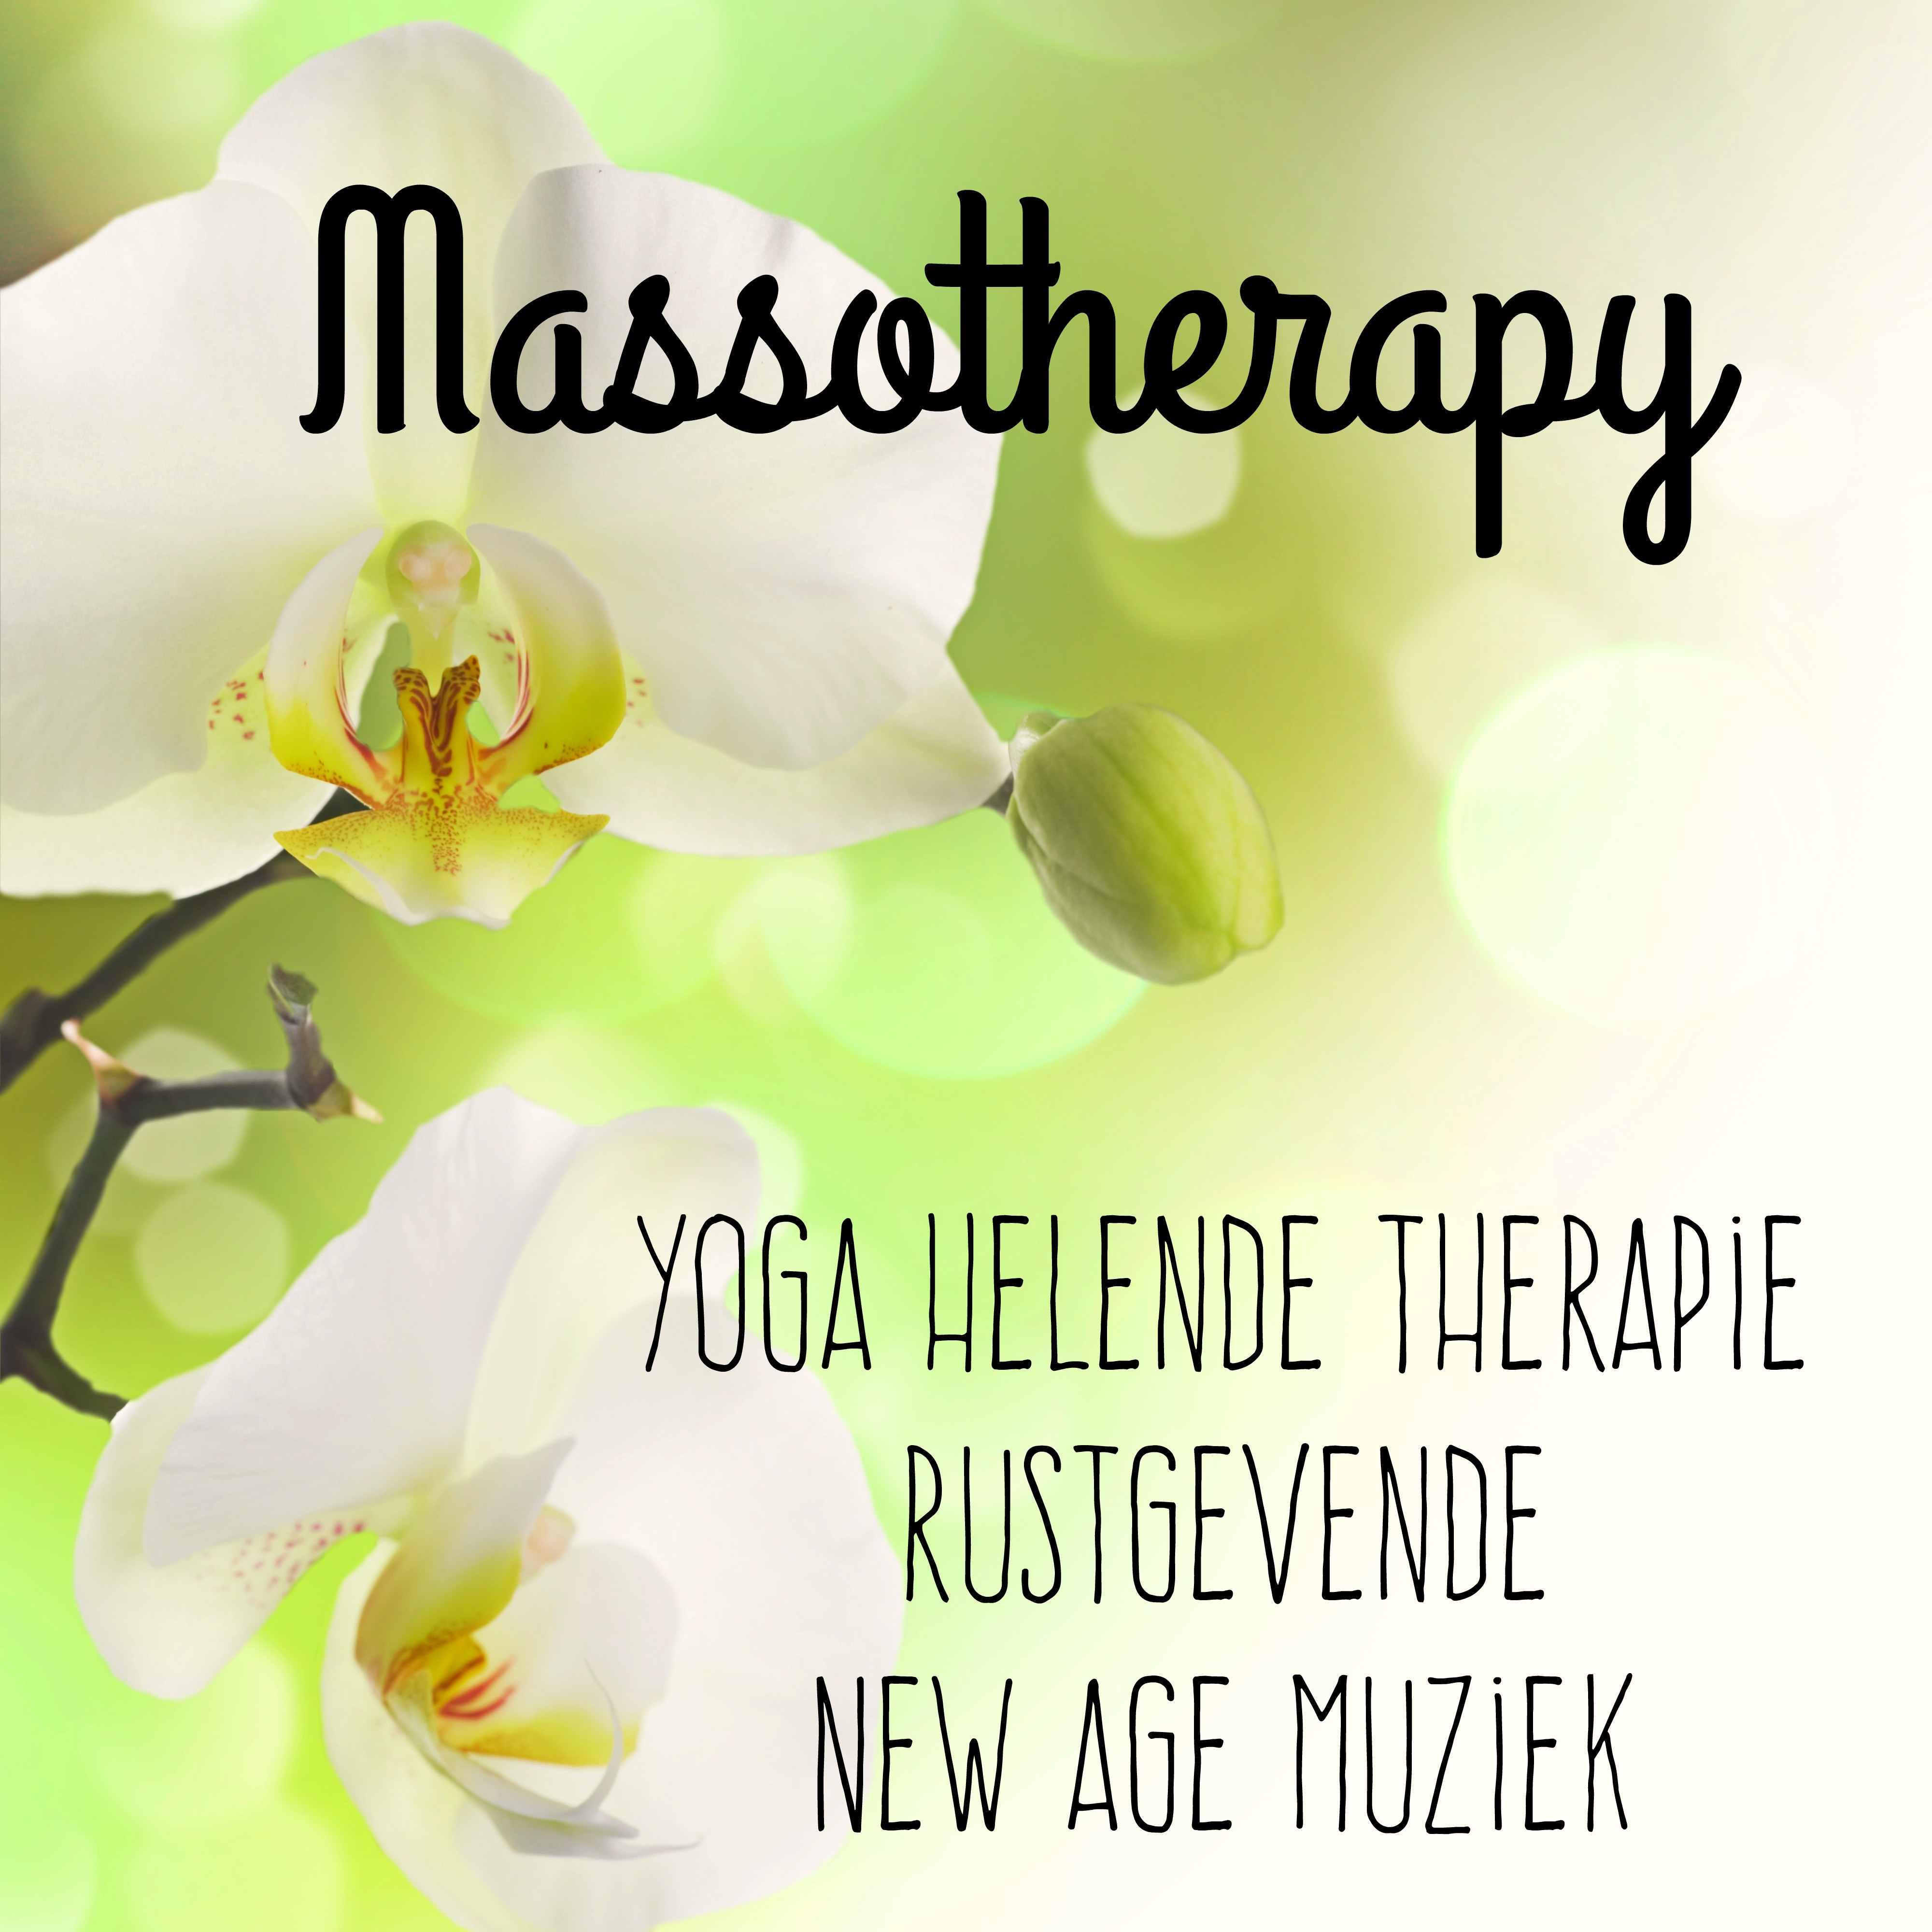 Massotherapy - Yoga Helende Therapie Rustgevende Instrumentale New Age Muziek voor Chakra Meditatie Zen Spa en Pranische Energie